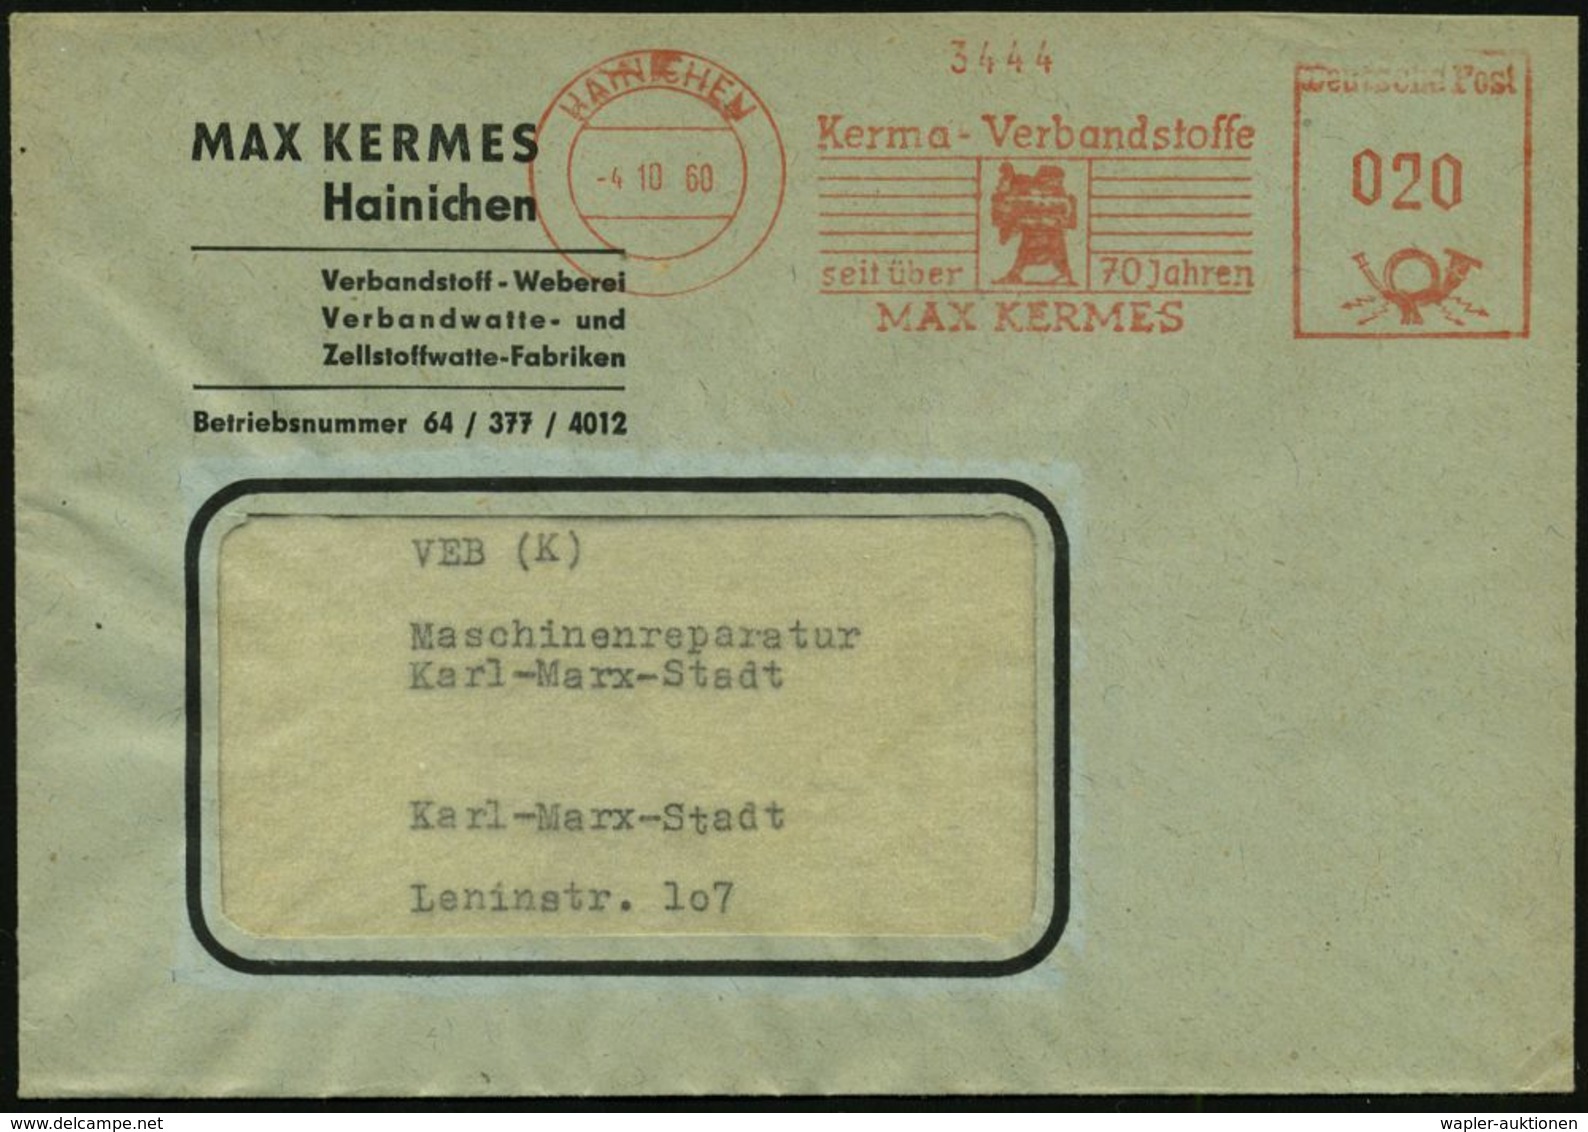 MEDIZINISCHE AUSRÜSTUNG & INSTRUMENTE : HAINICHEN/ Kerma-Verbandsstoffe/ Seit über 70 Jahren/ MAX KERMES 1960 (4.10.) AF - Medicina